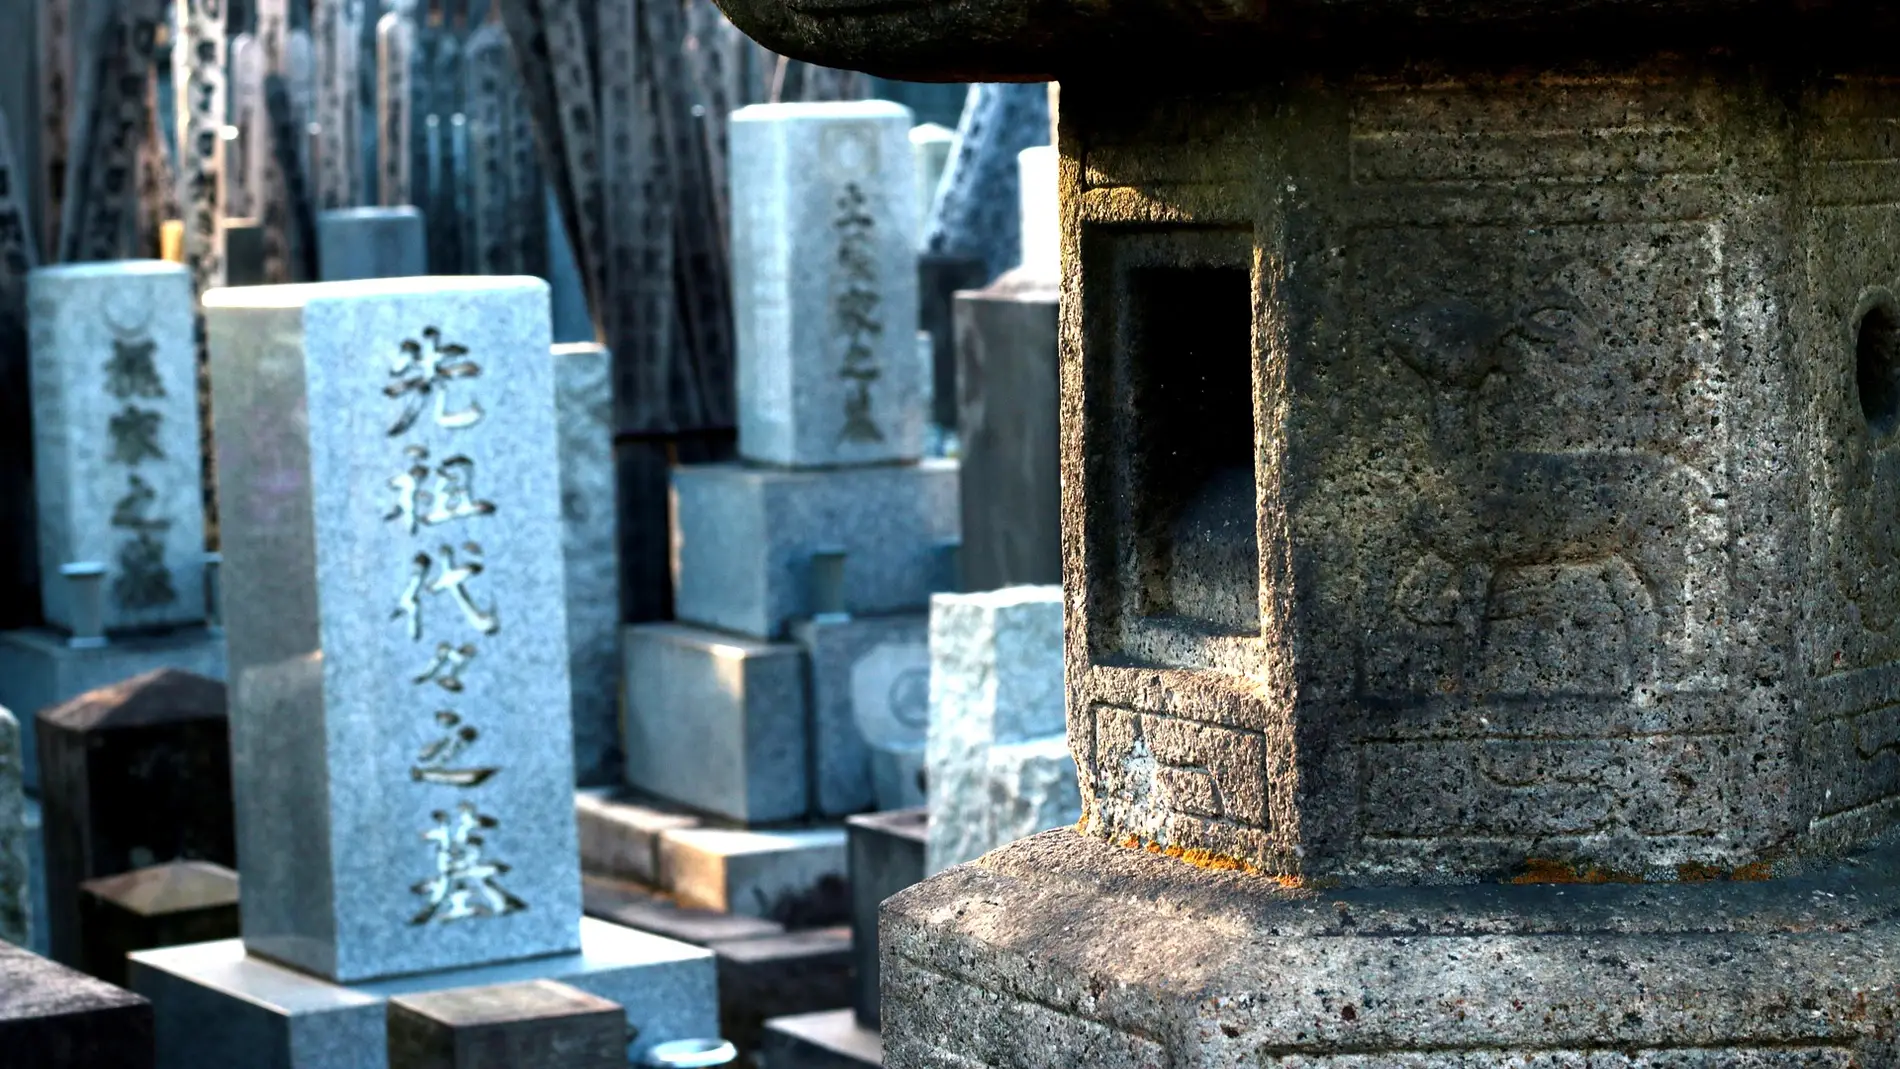 Cementerio japonés